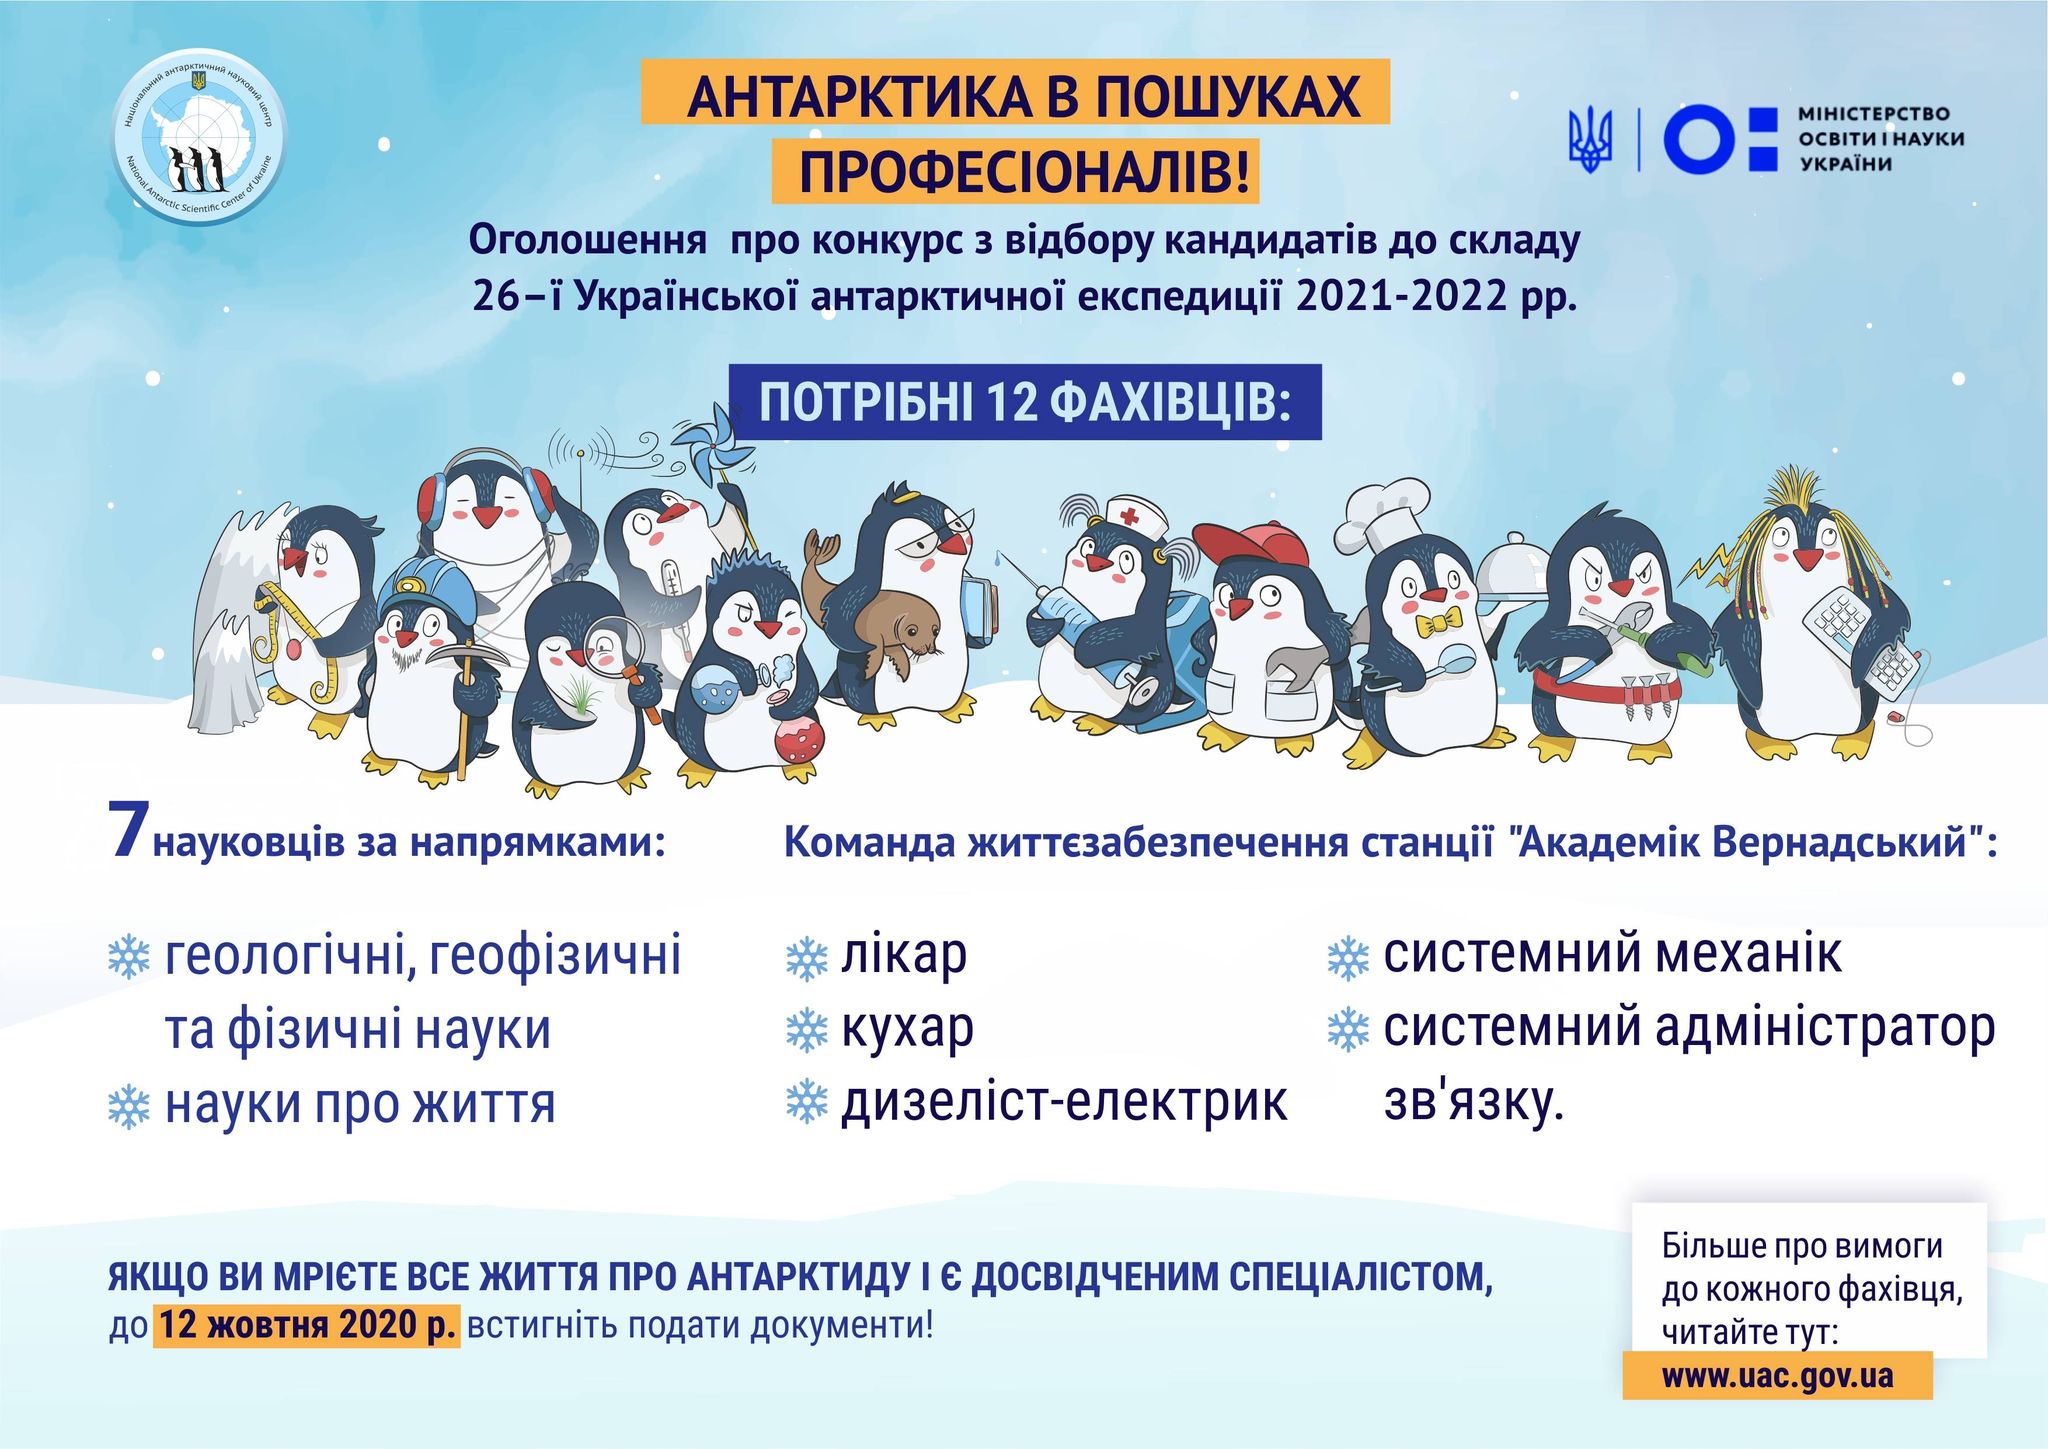 Стань полярником: в Украине открылся набор желающих для экспедиции в Антарктиду